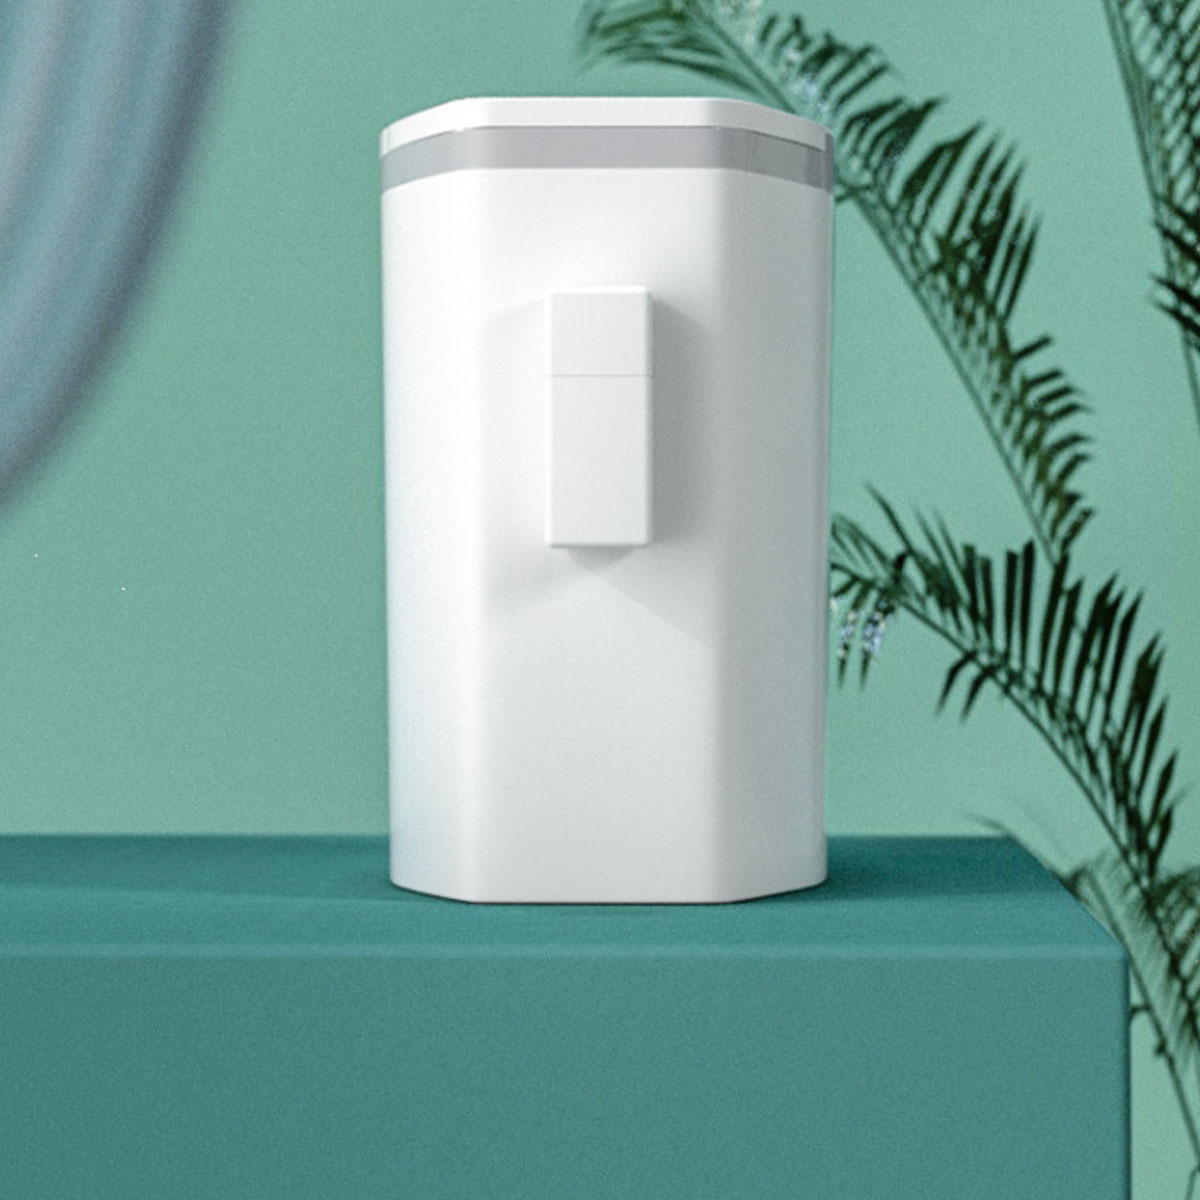 11L Estreito de plástico Tipo Prensa de vaso sanitário para cozinha Tipo Caixote do lixo Caixote do lixo Banheiro Caixote do lixo Cesto de lixo Cesto de lixo